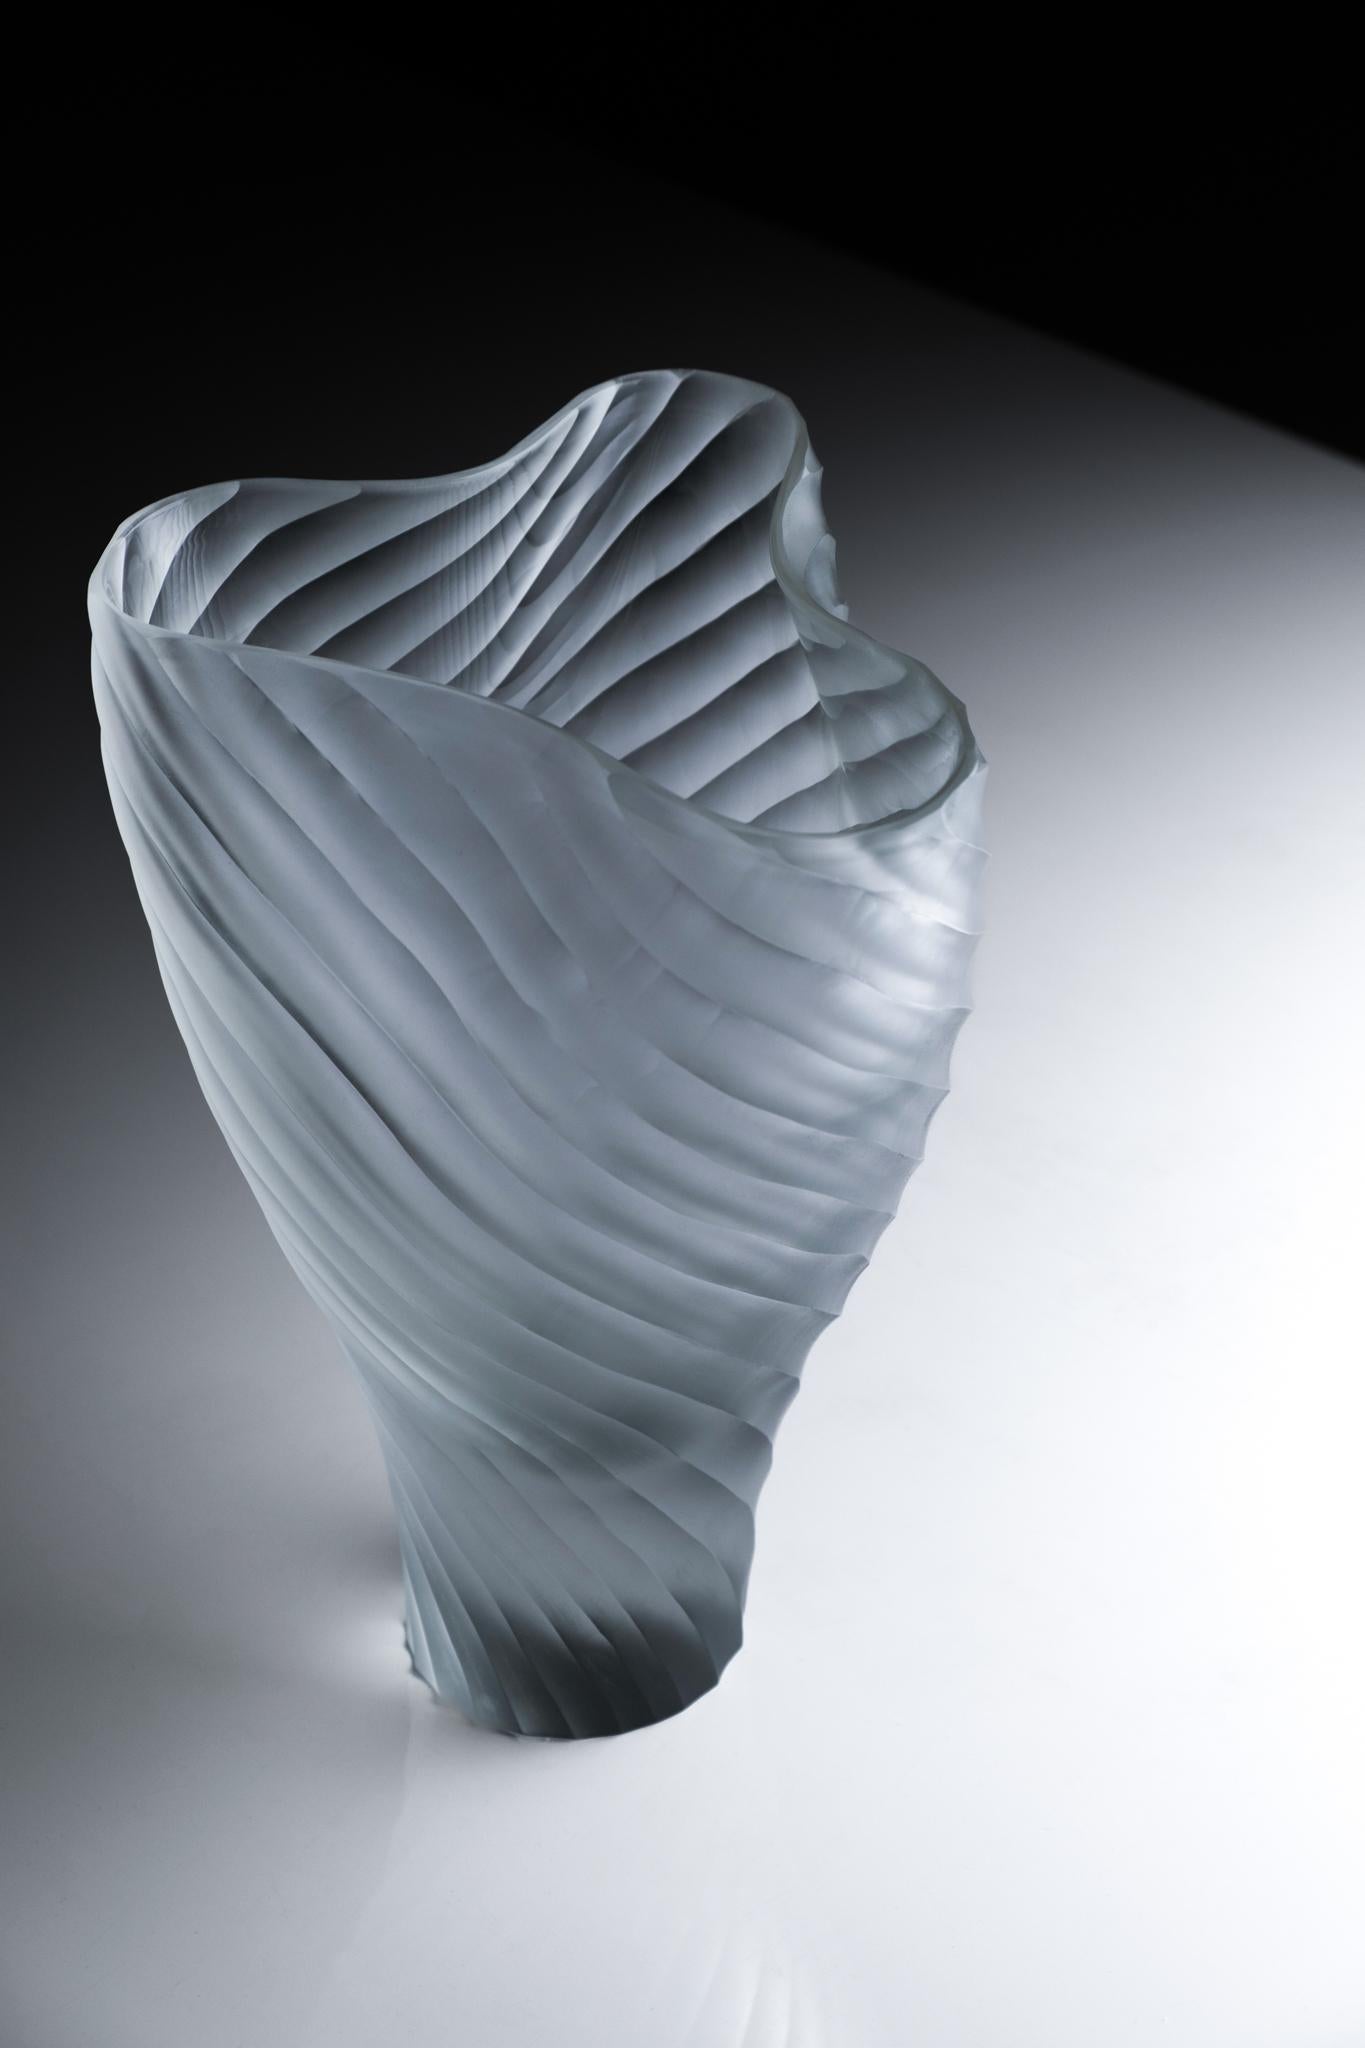 Mascareta ist eine Vase aus der Laguna Collection, entworfen von Ludovica+Roberto Palomba für Purho im Frühjahr 2022. 
Mascareta - dessen Name an das typische Boot der Lagune von Venedig erinnert - zeichnet sich durch großzügige Formen mit nach